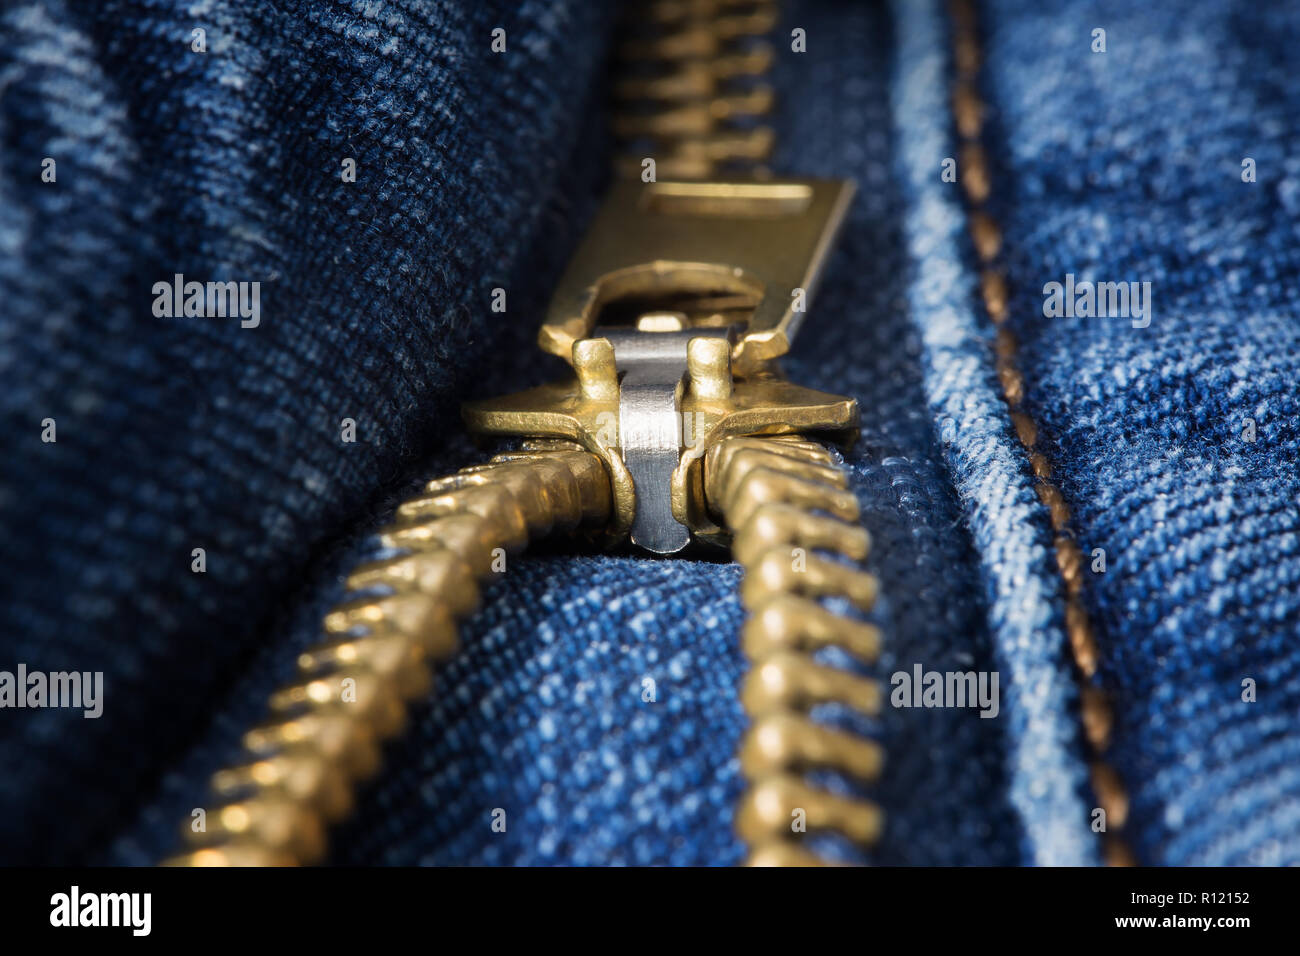 Ottone decompressi zipper closeup sul jeans blu Foto Stock